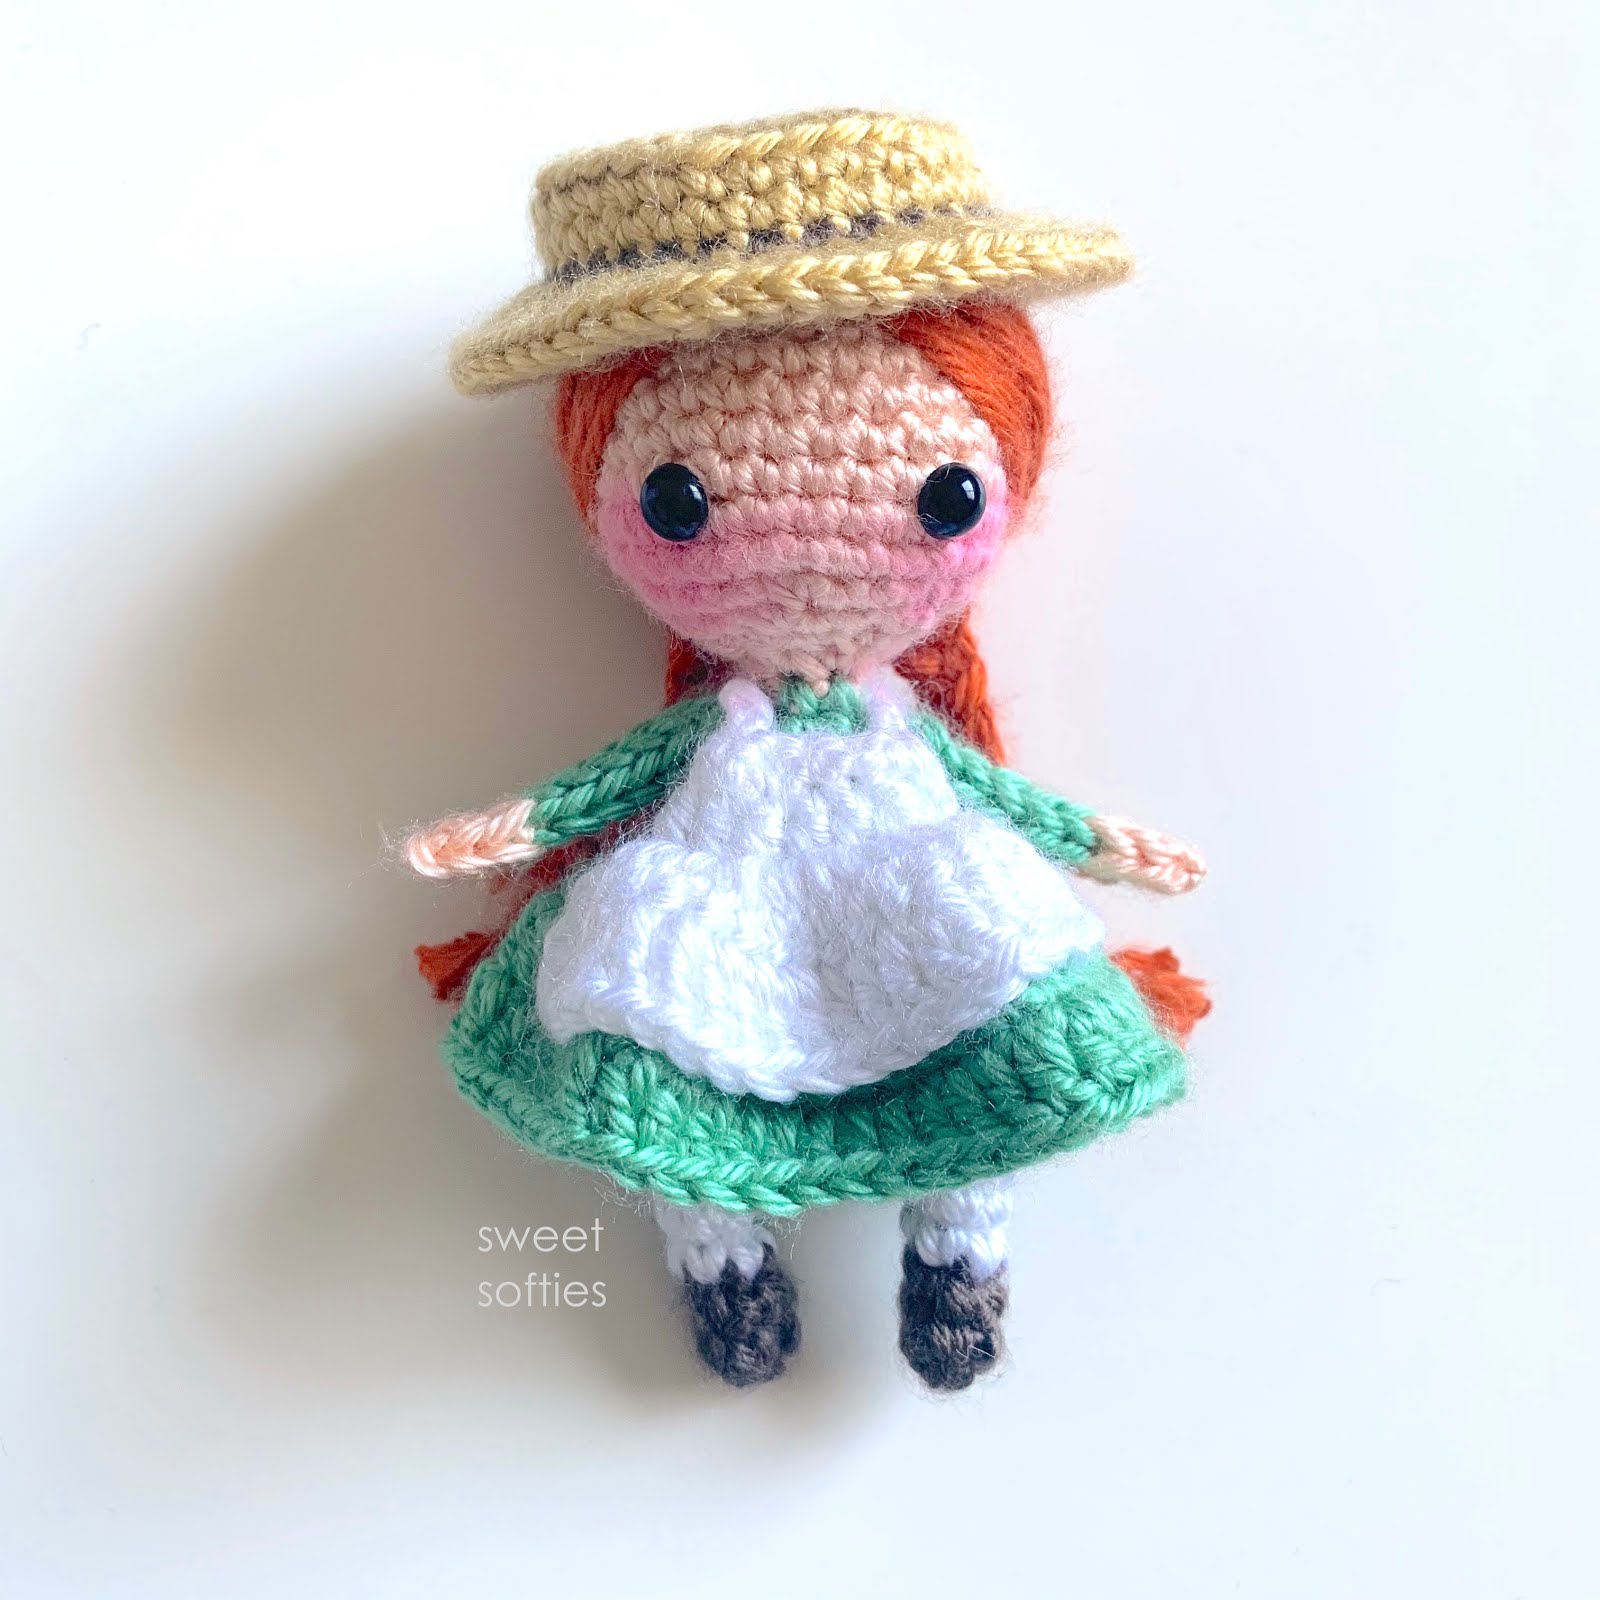 Anne of Green Gables Inspired Doll Gift for Girl Literary Gift Literary Inspired Doll Crochet Doll Crochet Doll